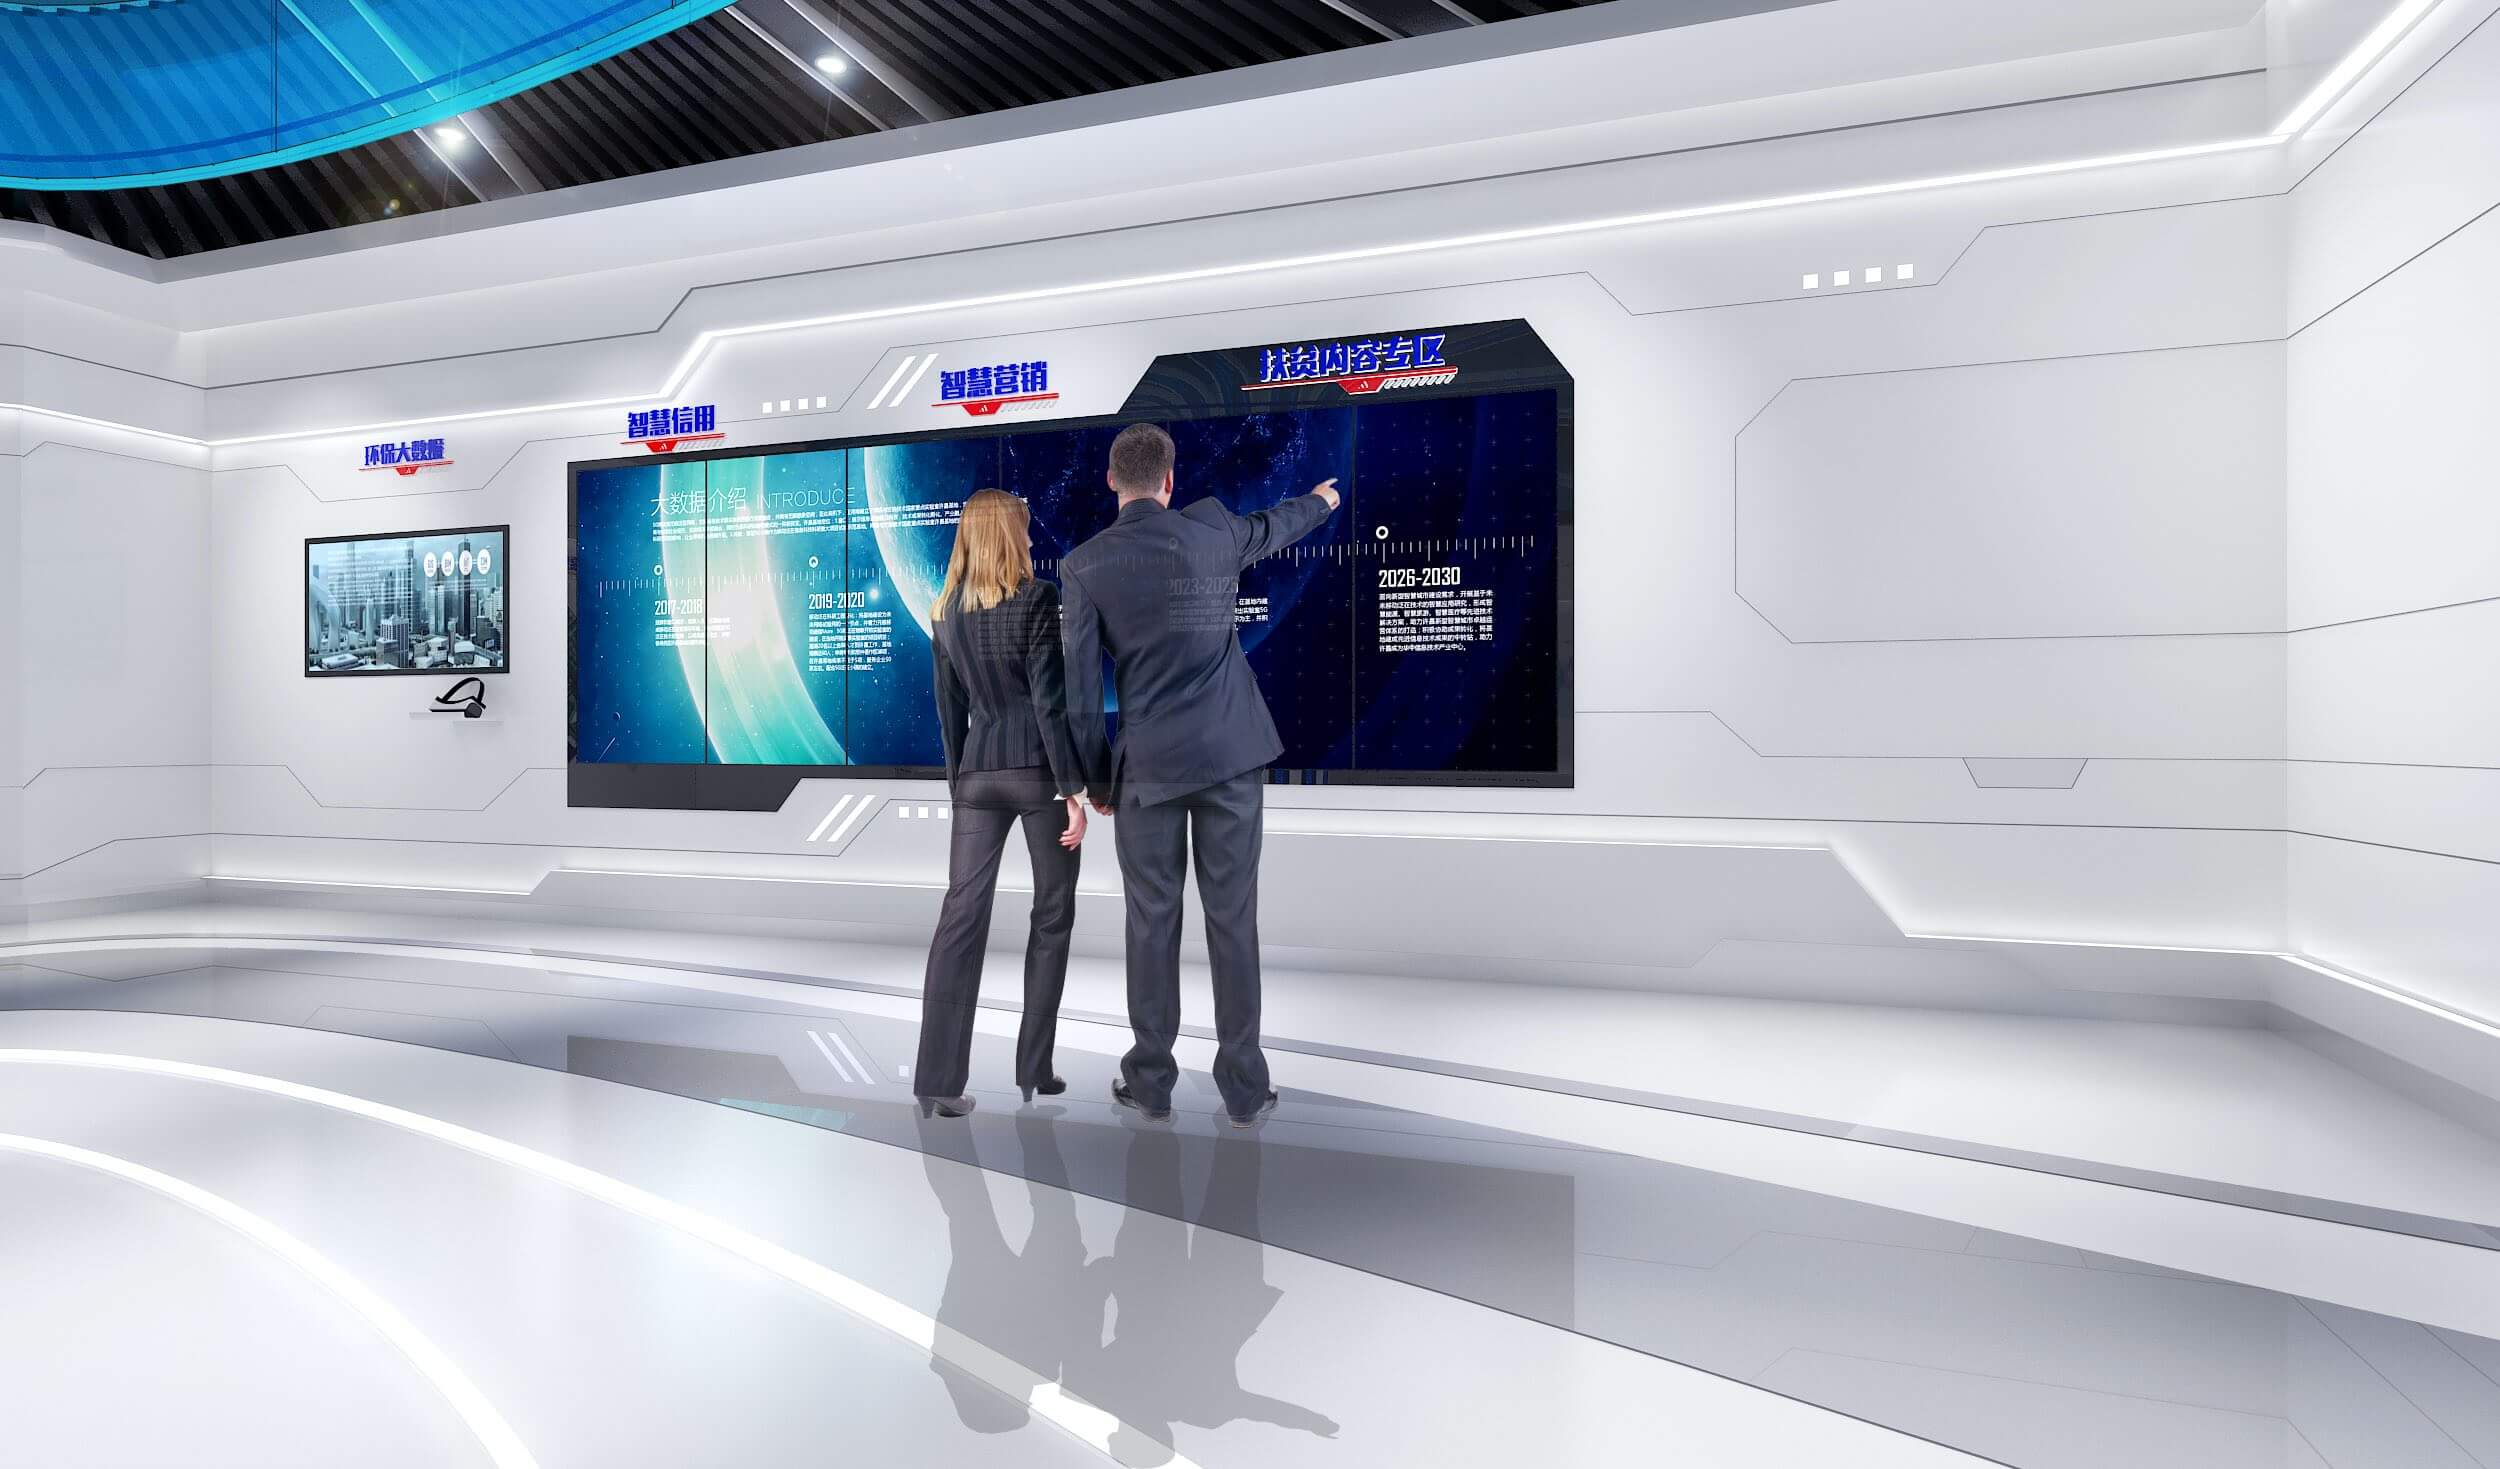 图片展示两位穿着正装的人站在一个现代化控制室内，正共同观看并讨论一面大型屏幕上的数据和图表。